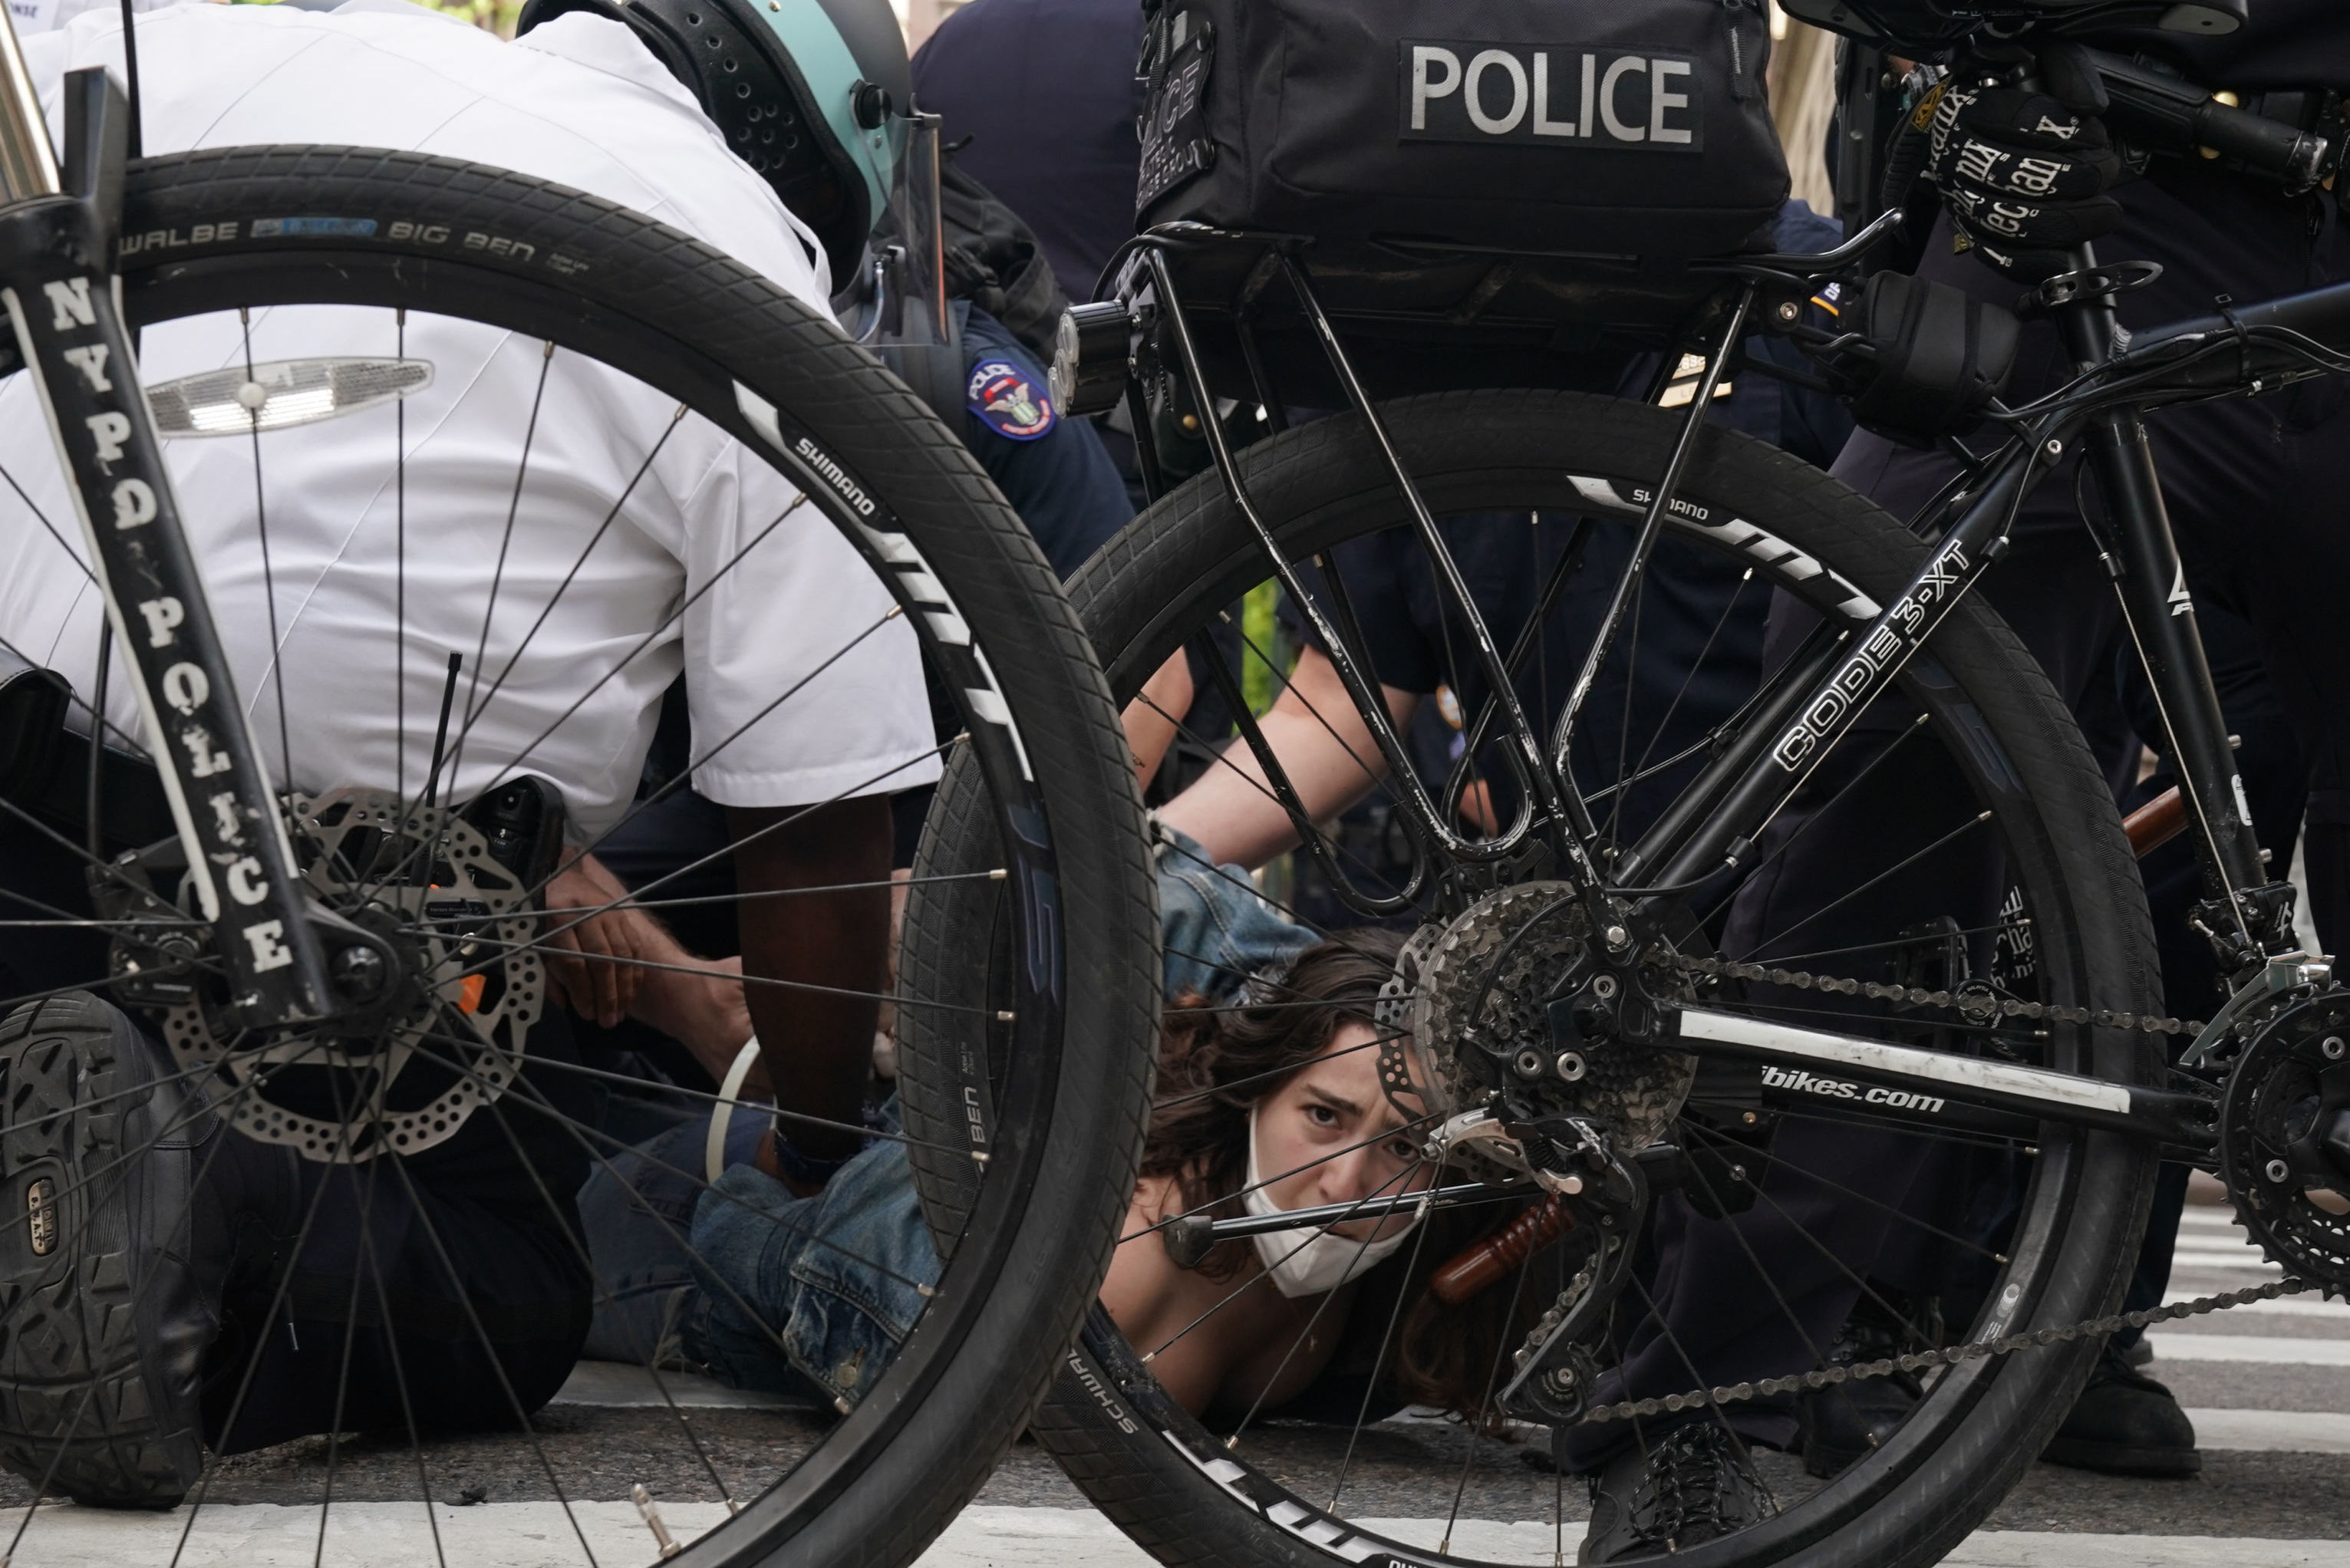 Сотрудники полиции производят задержания вовремя протеста в Нью-Йорке. Протесты проходят в городах США в связи со смертью при задержании полицией афроамериканца Джорджа Флойда в Миннеаполисе.